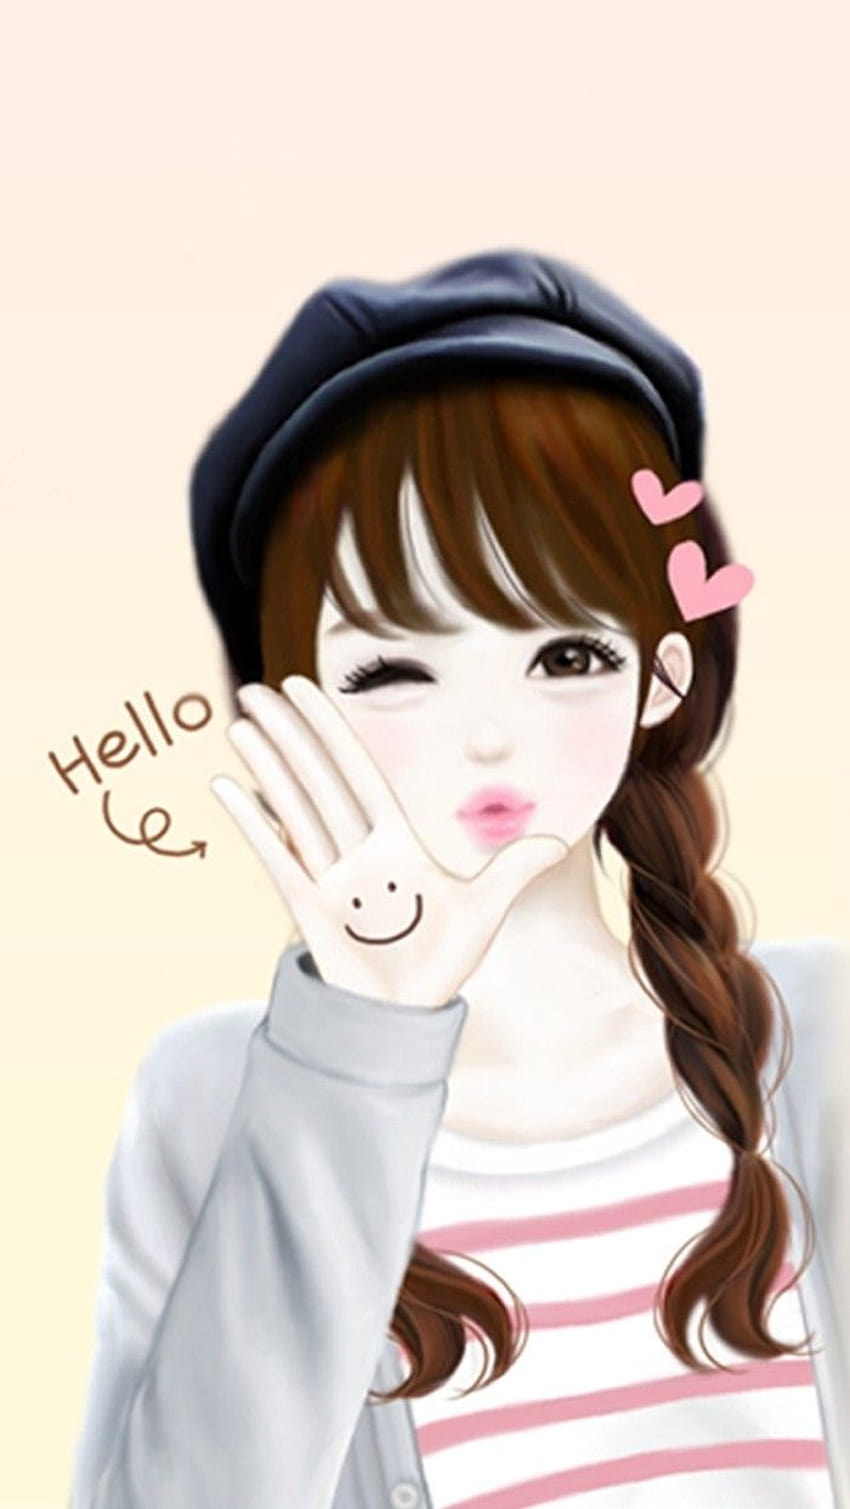 Cute Cartoon Girl, cute lovely girl cartoon HD phone wallpaper ...